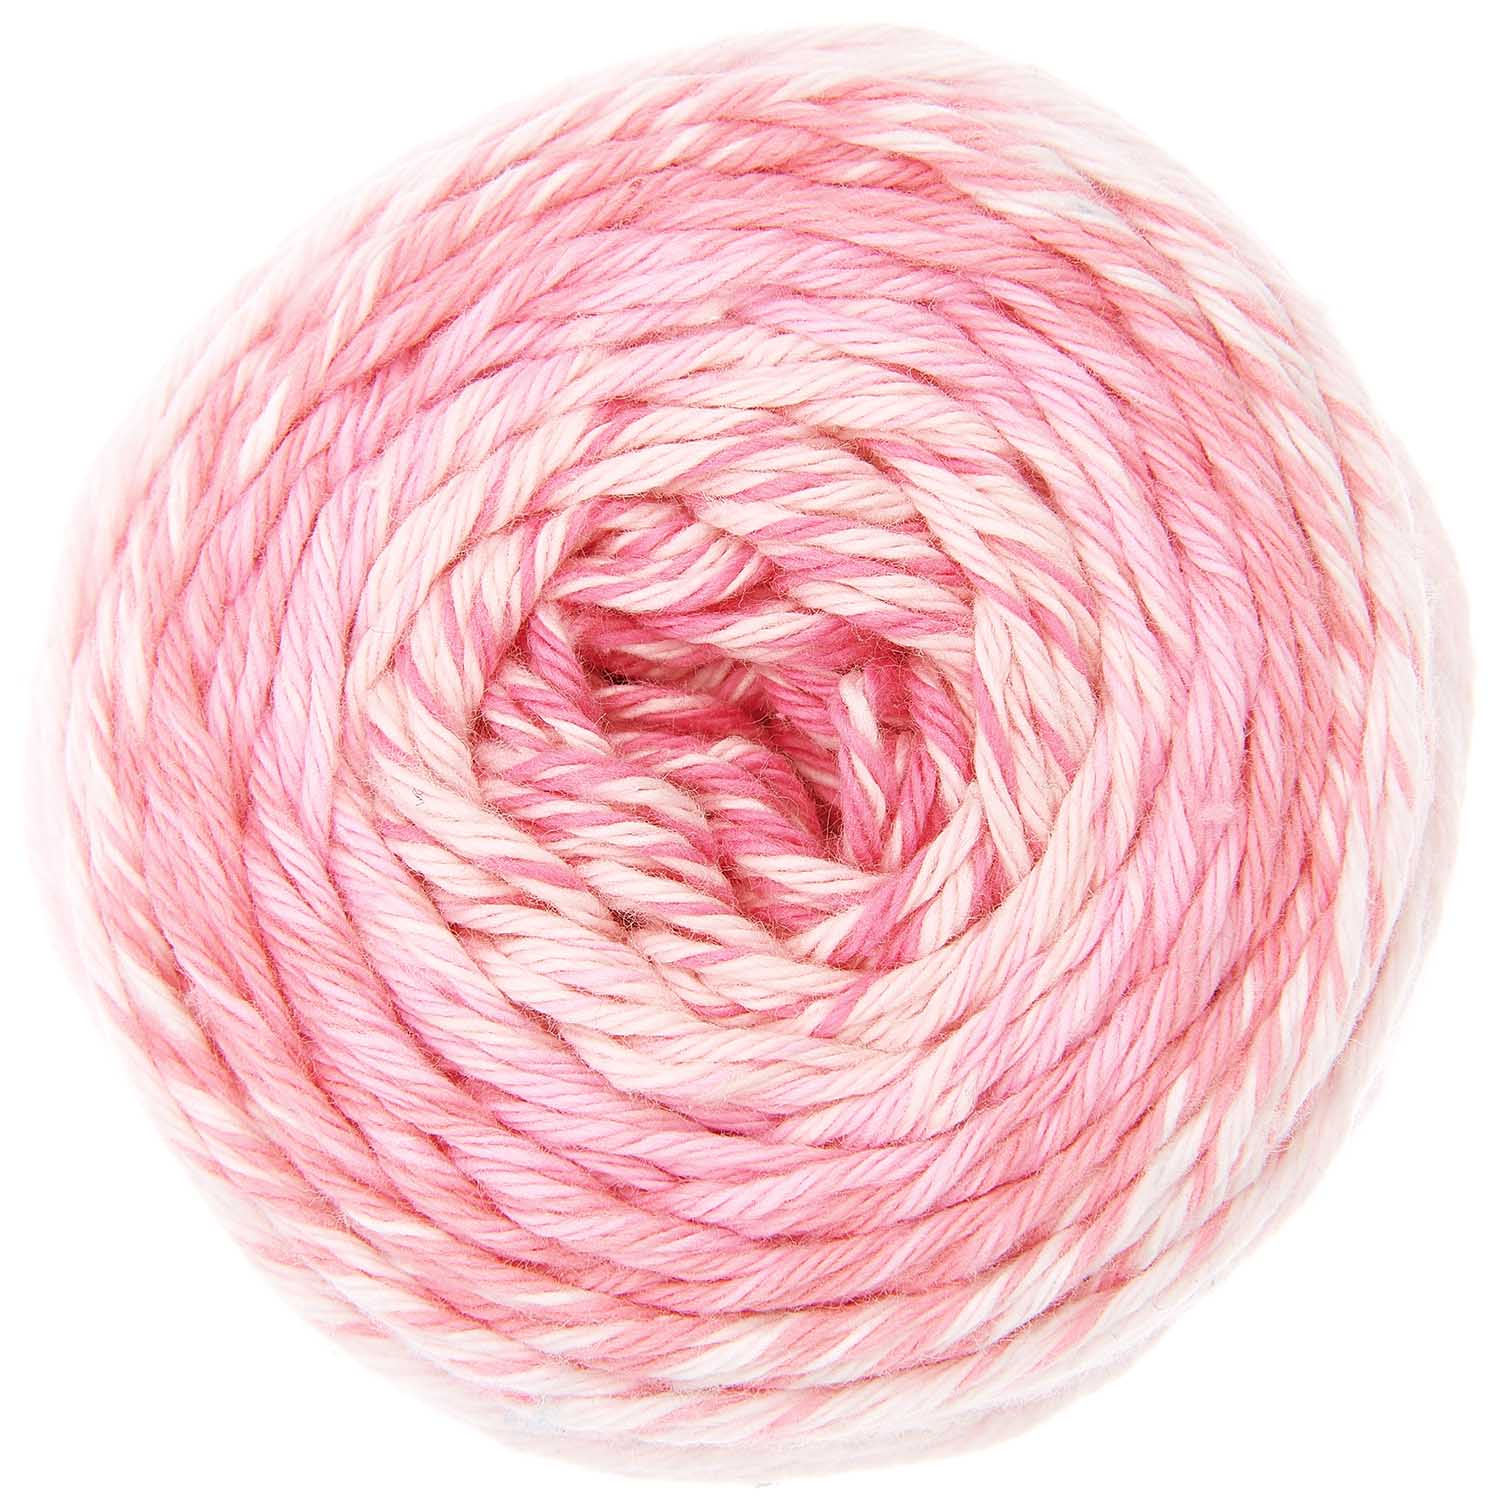 Ricorumi Spin Spin dk, Farbverlauf, 50g, 100 % Baumwolle